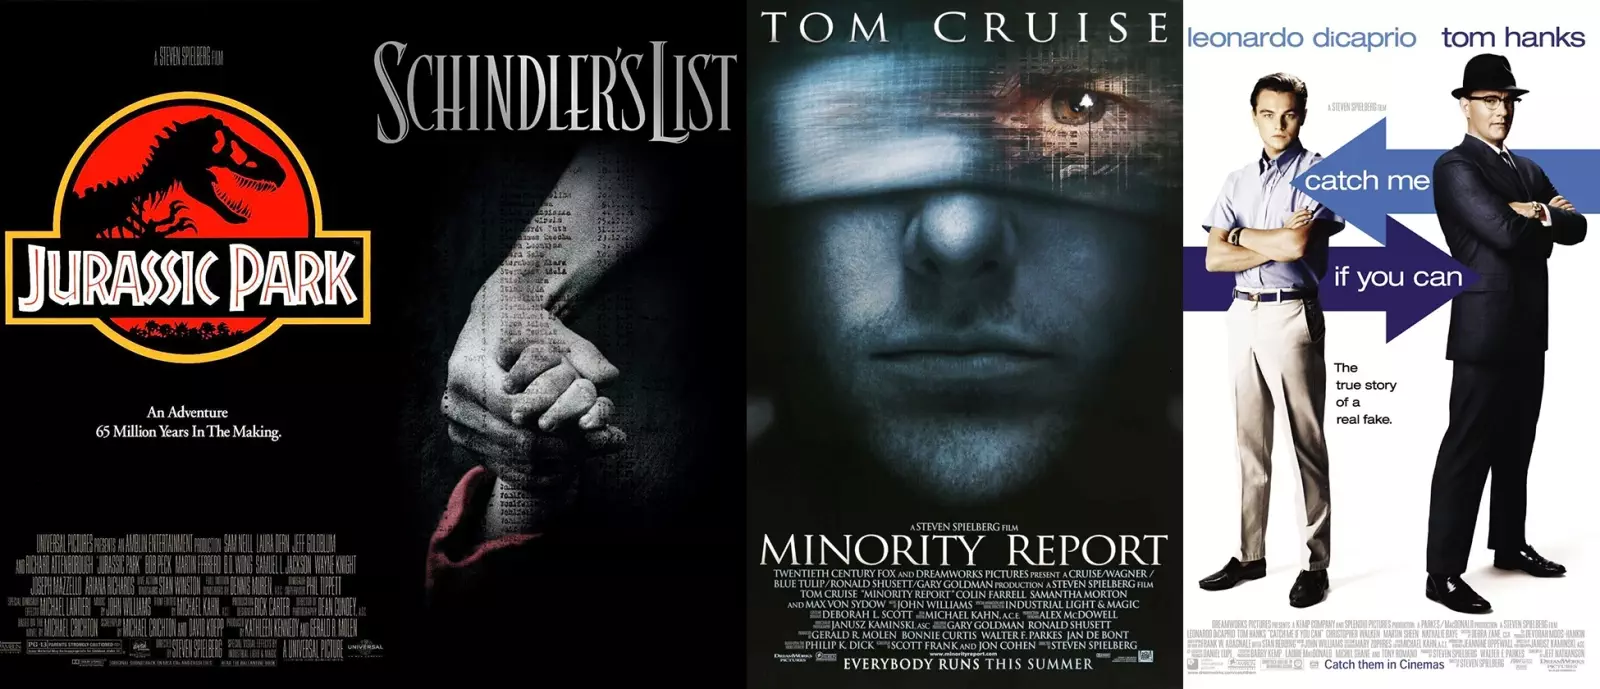 1993 i 2002: Steven Spielberg rządzi kinem!